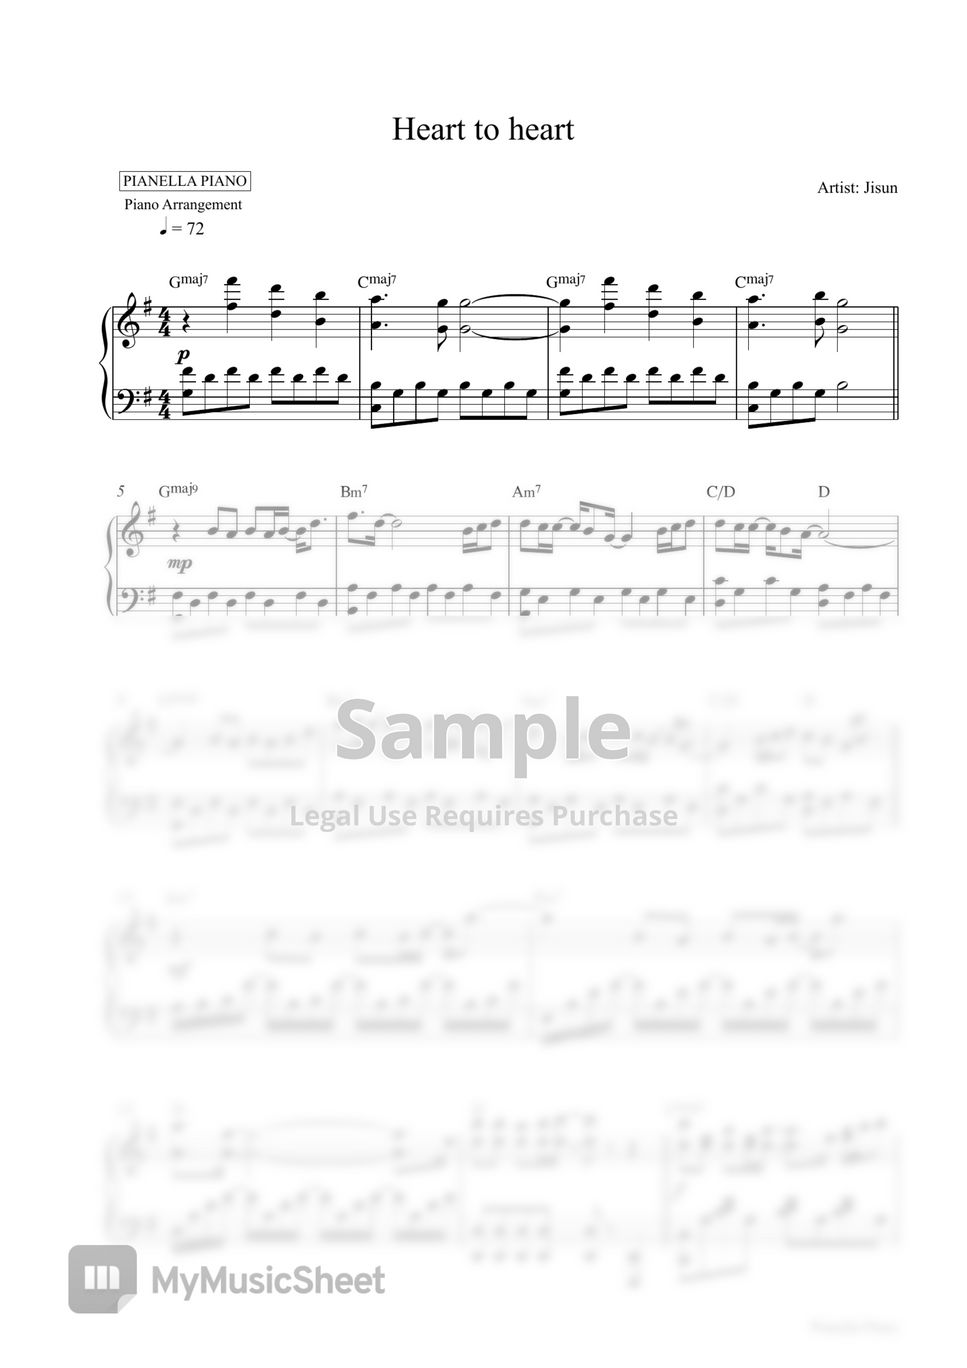 Jisun - Heart to heart (Piano Sheet) by Pianella Piano